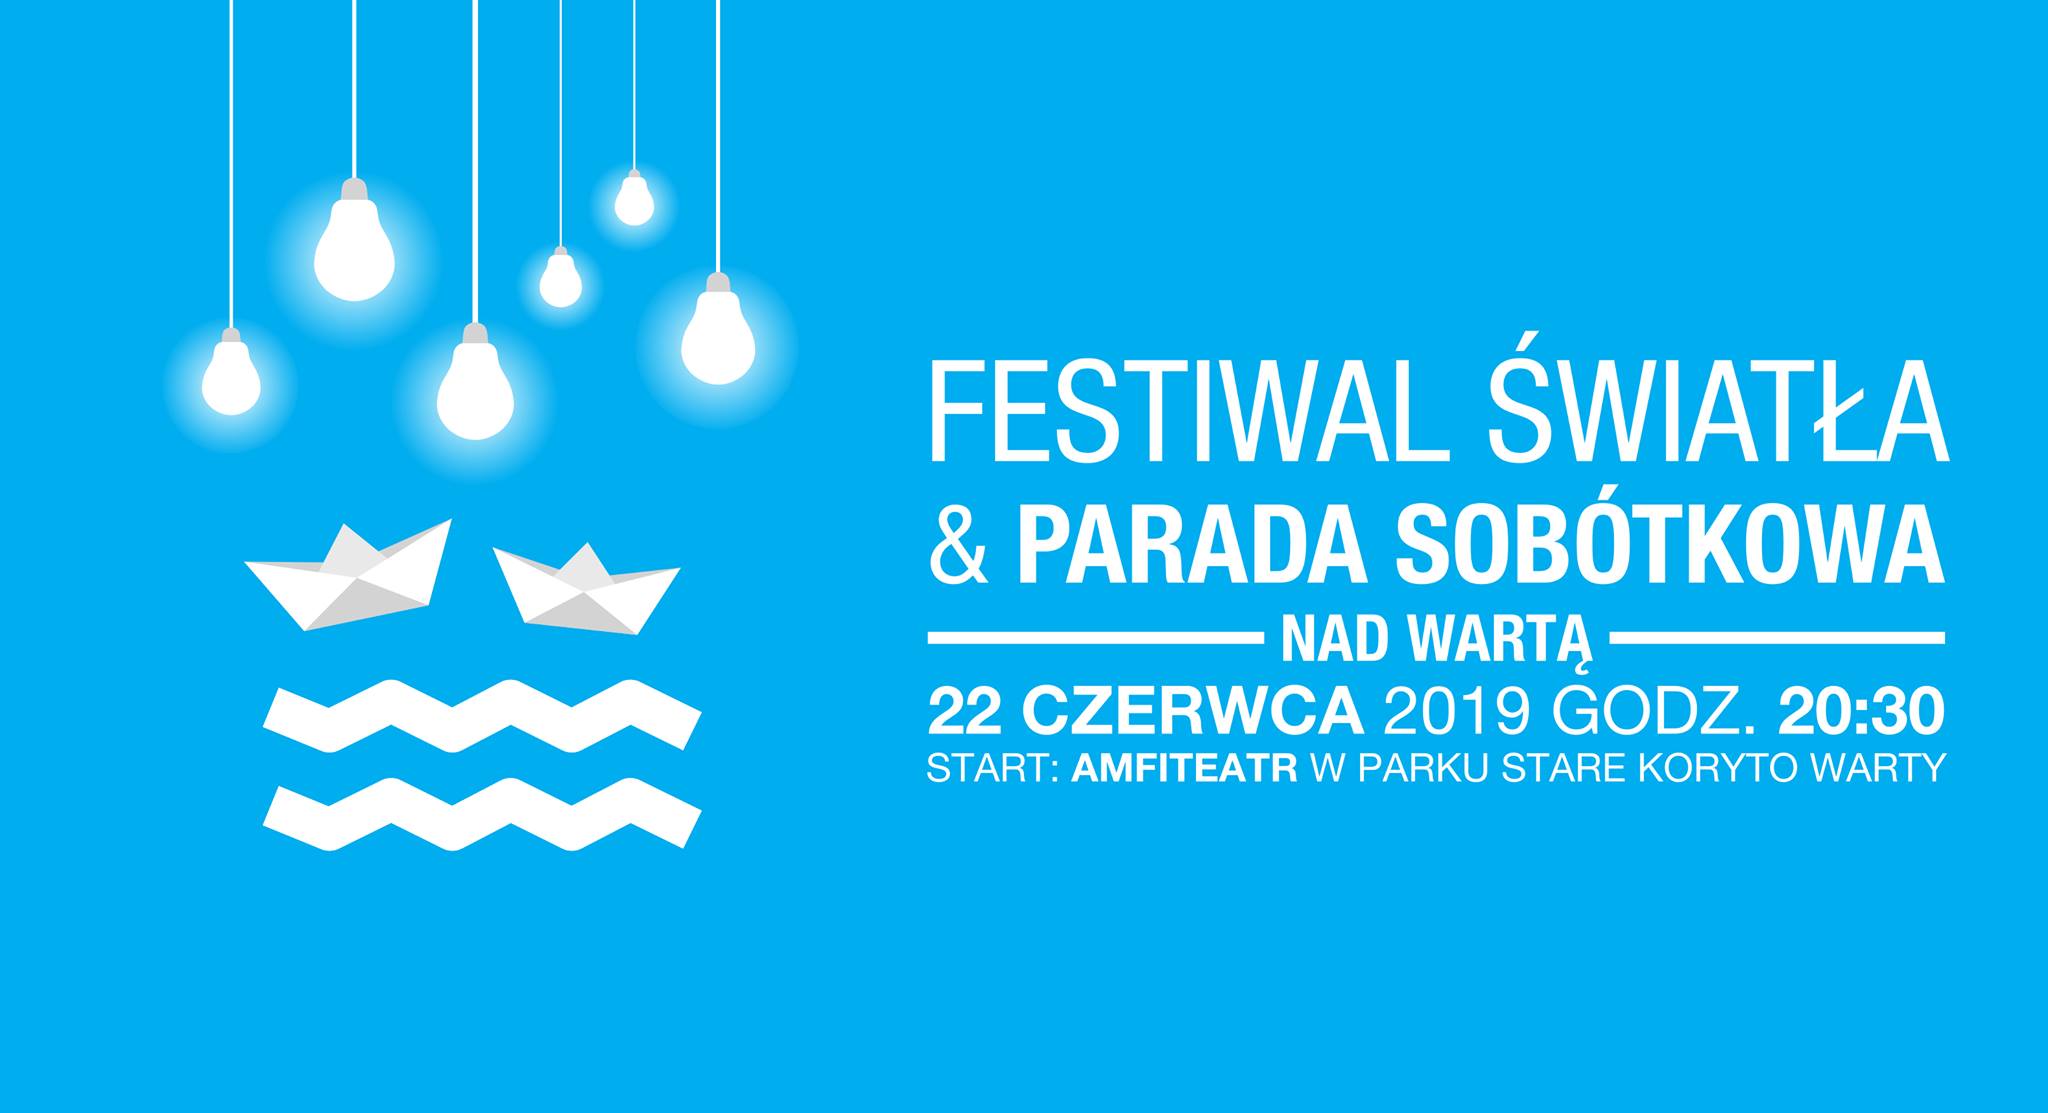 Festiwal Światła & Parada Sobótkowa nad Wartą, Poznań